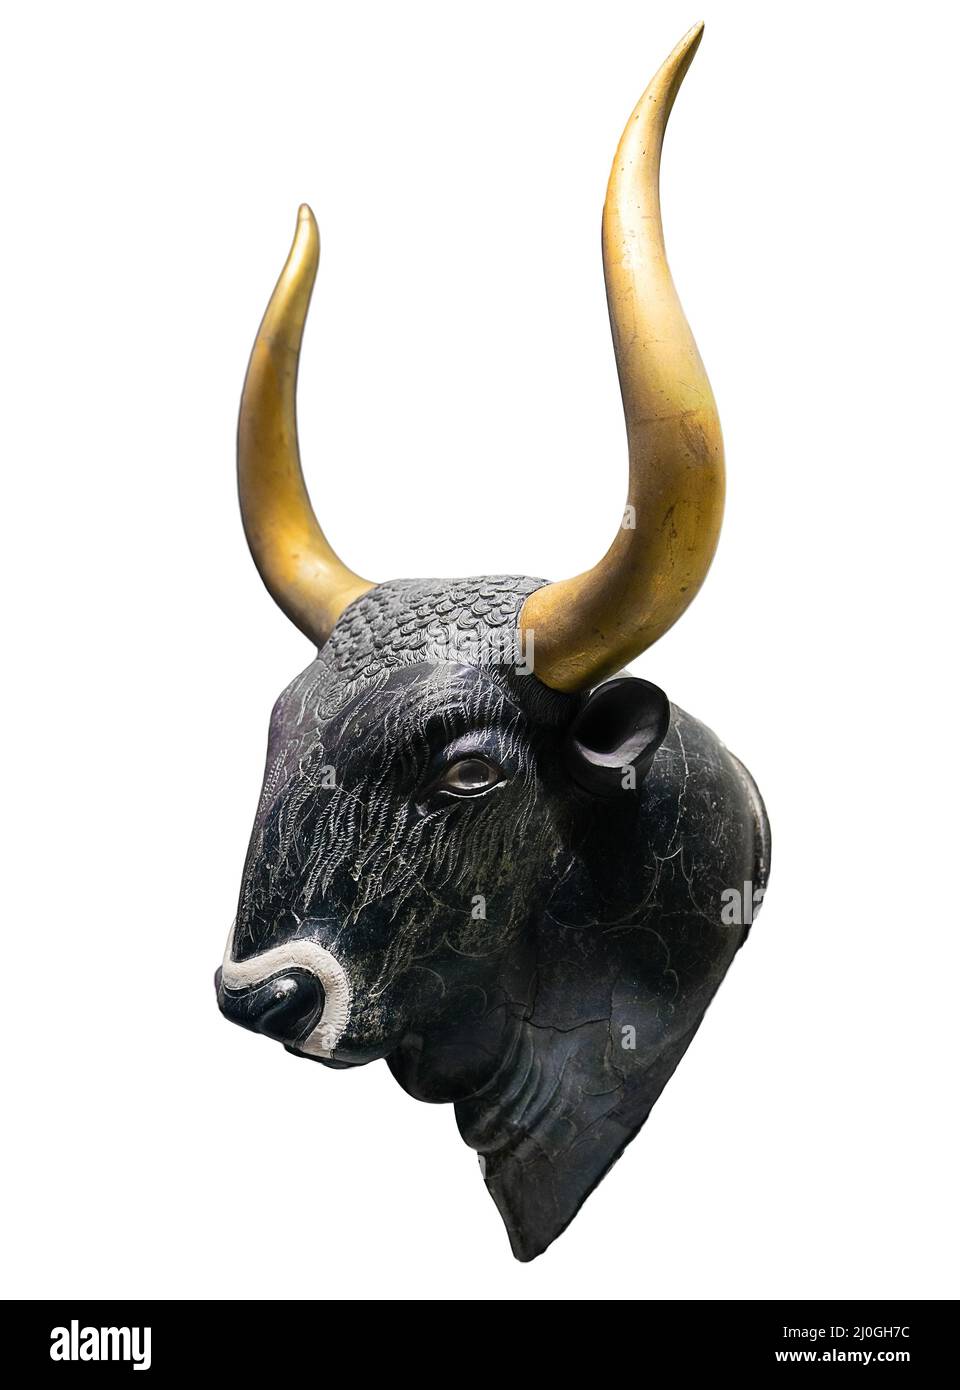 Chef de la taureau Minoan - un animal sacré de l'ancien peuple crétois Banque D'Images